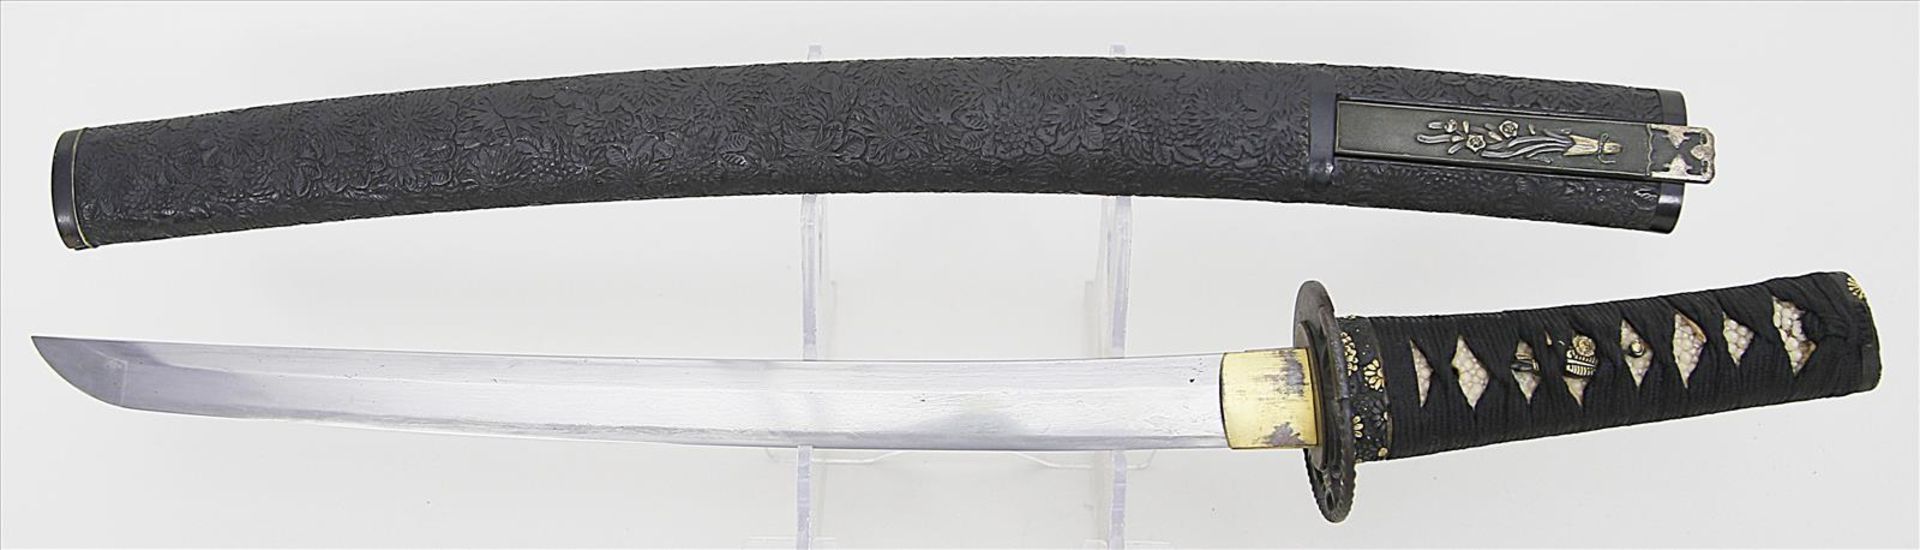 Kleines Schwert - Wakizashi.Polierte Stahlklinge. Goldtauschierte Tsuba aus Eisen (durchbrochen